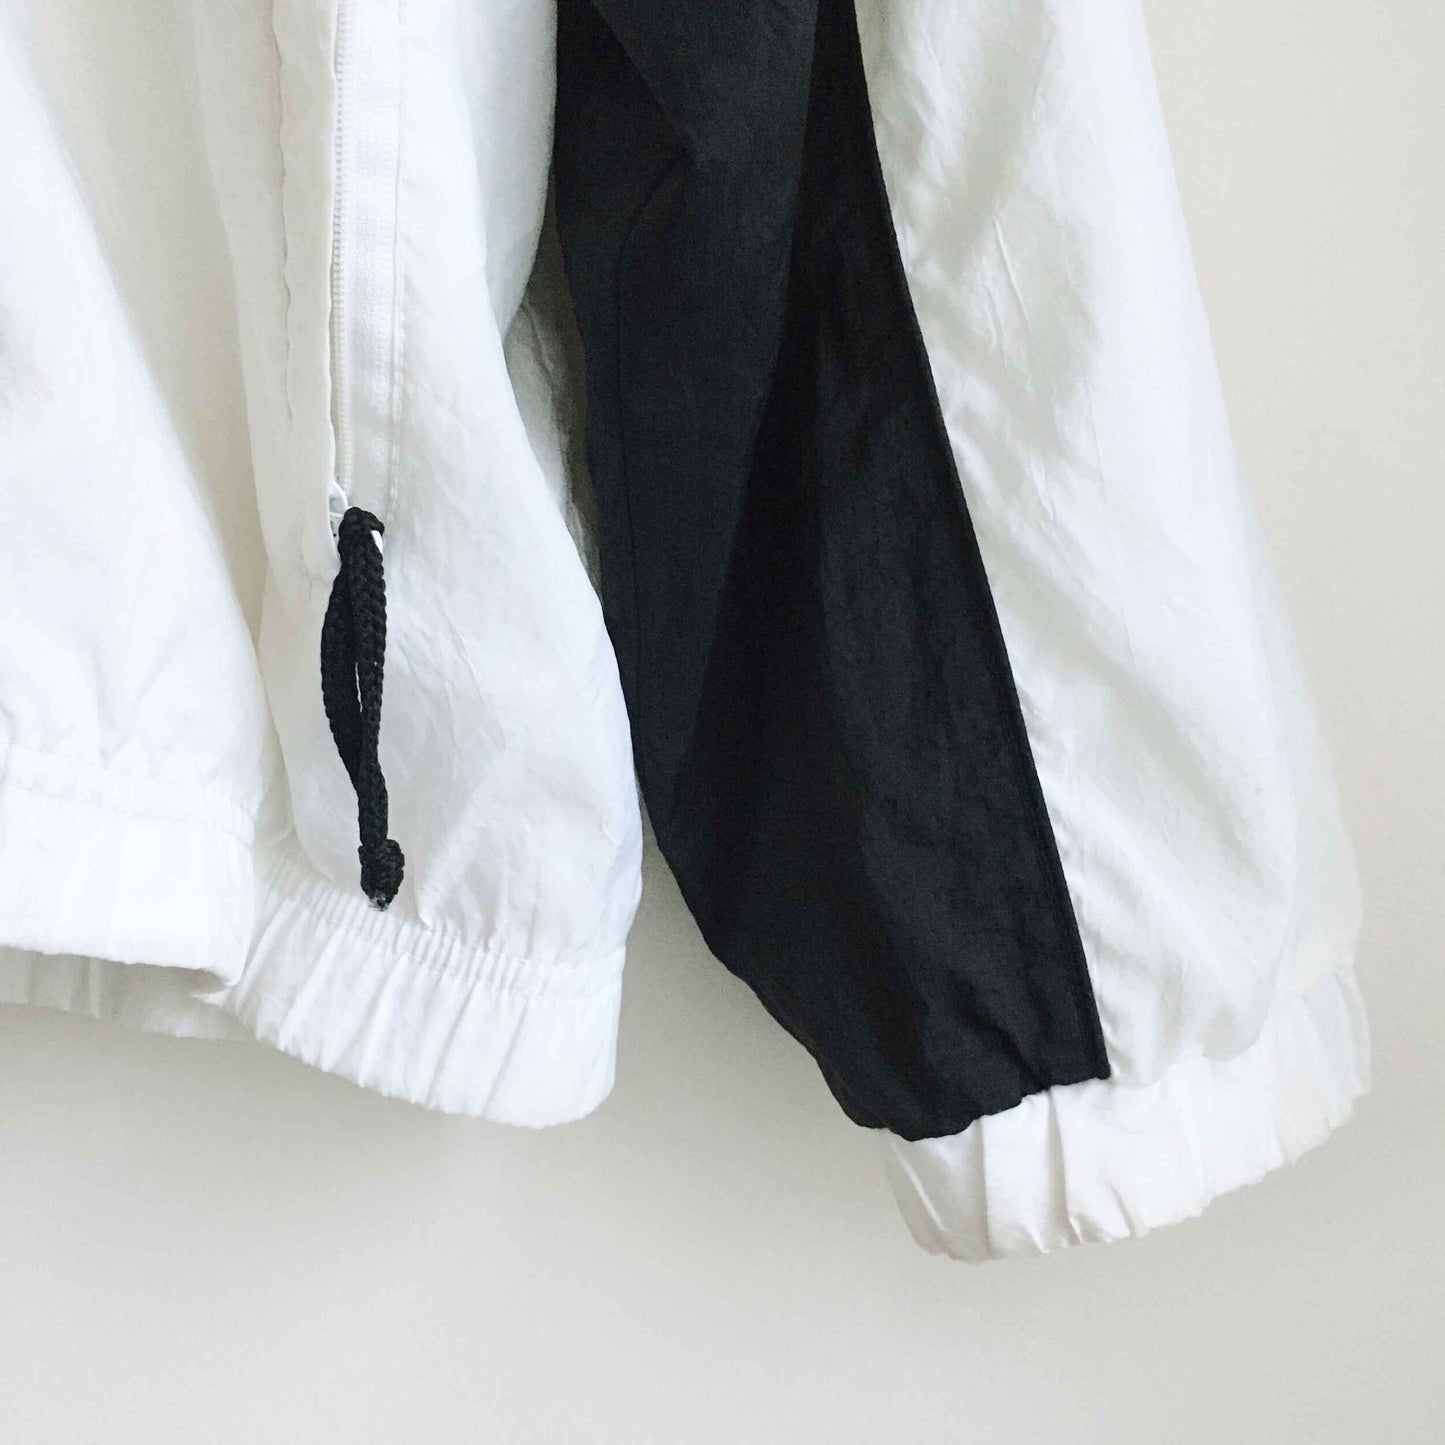 Vintage Nike Windbreaker with zip-off sleeves - size Medium